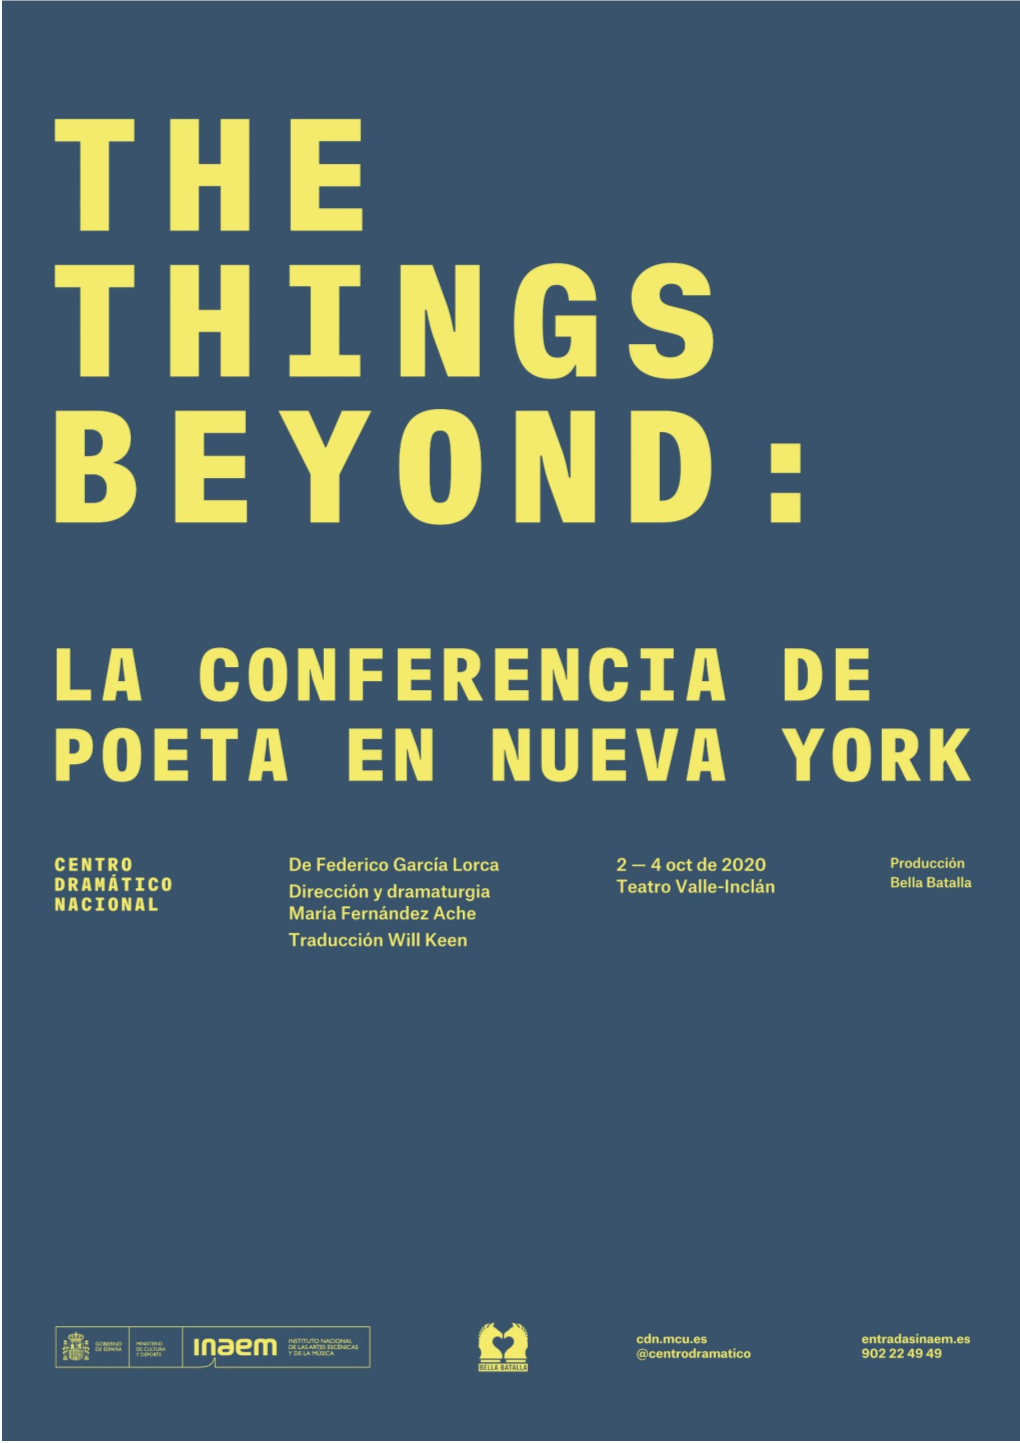 The Things Beyond: La Conferencia De Poeta En Nueva York the THINGS BEYOND: LA CONFERENCIA DE POETA EN NUEVA YORK